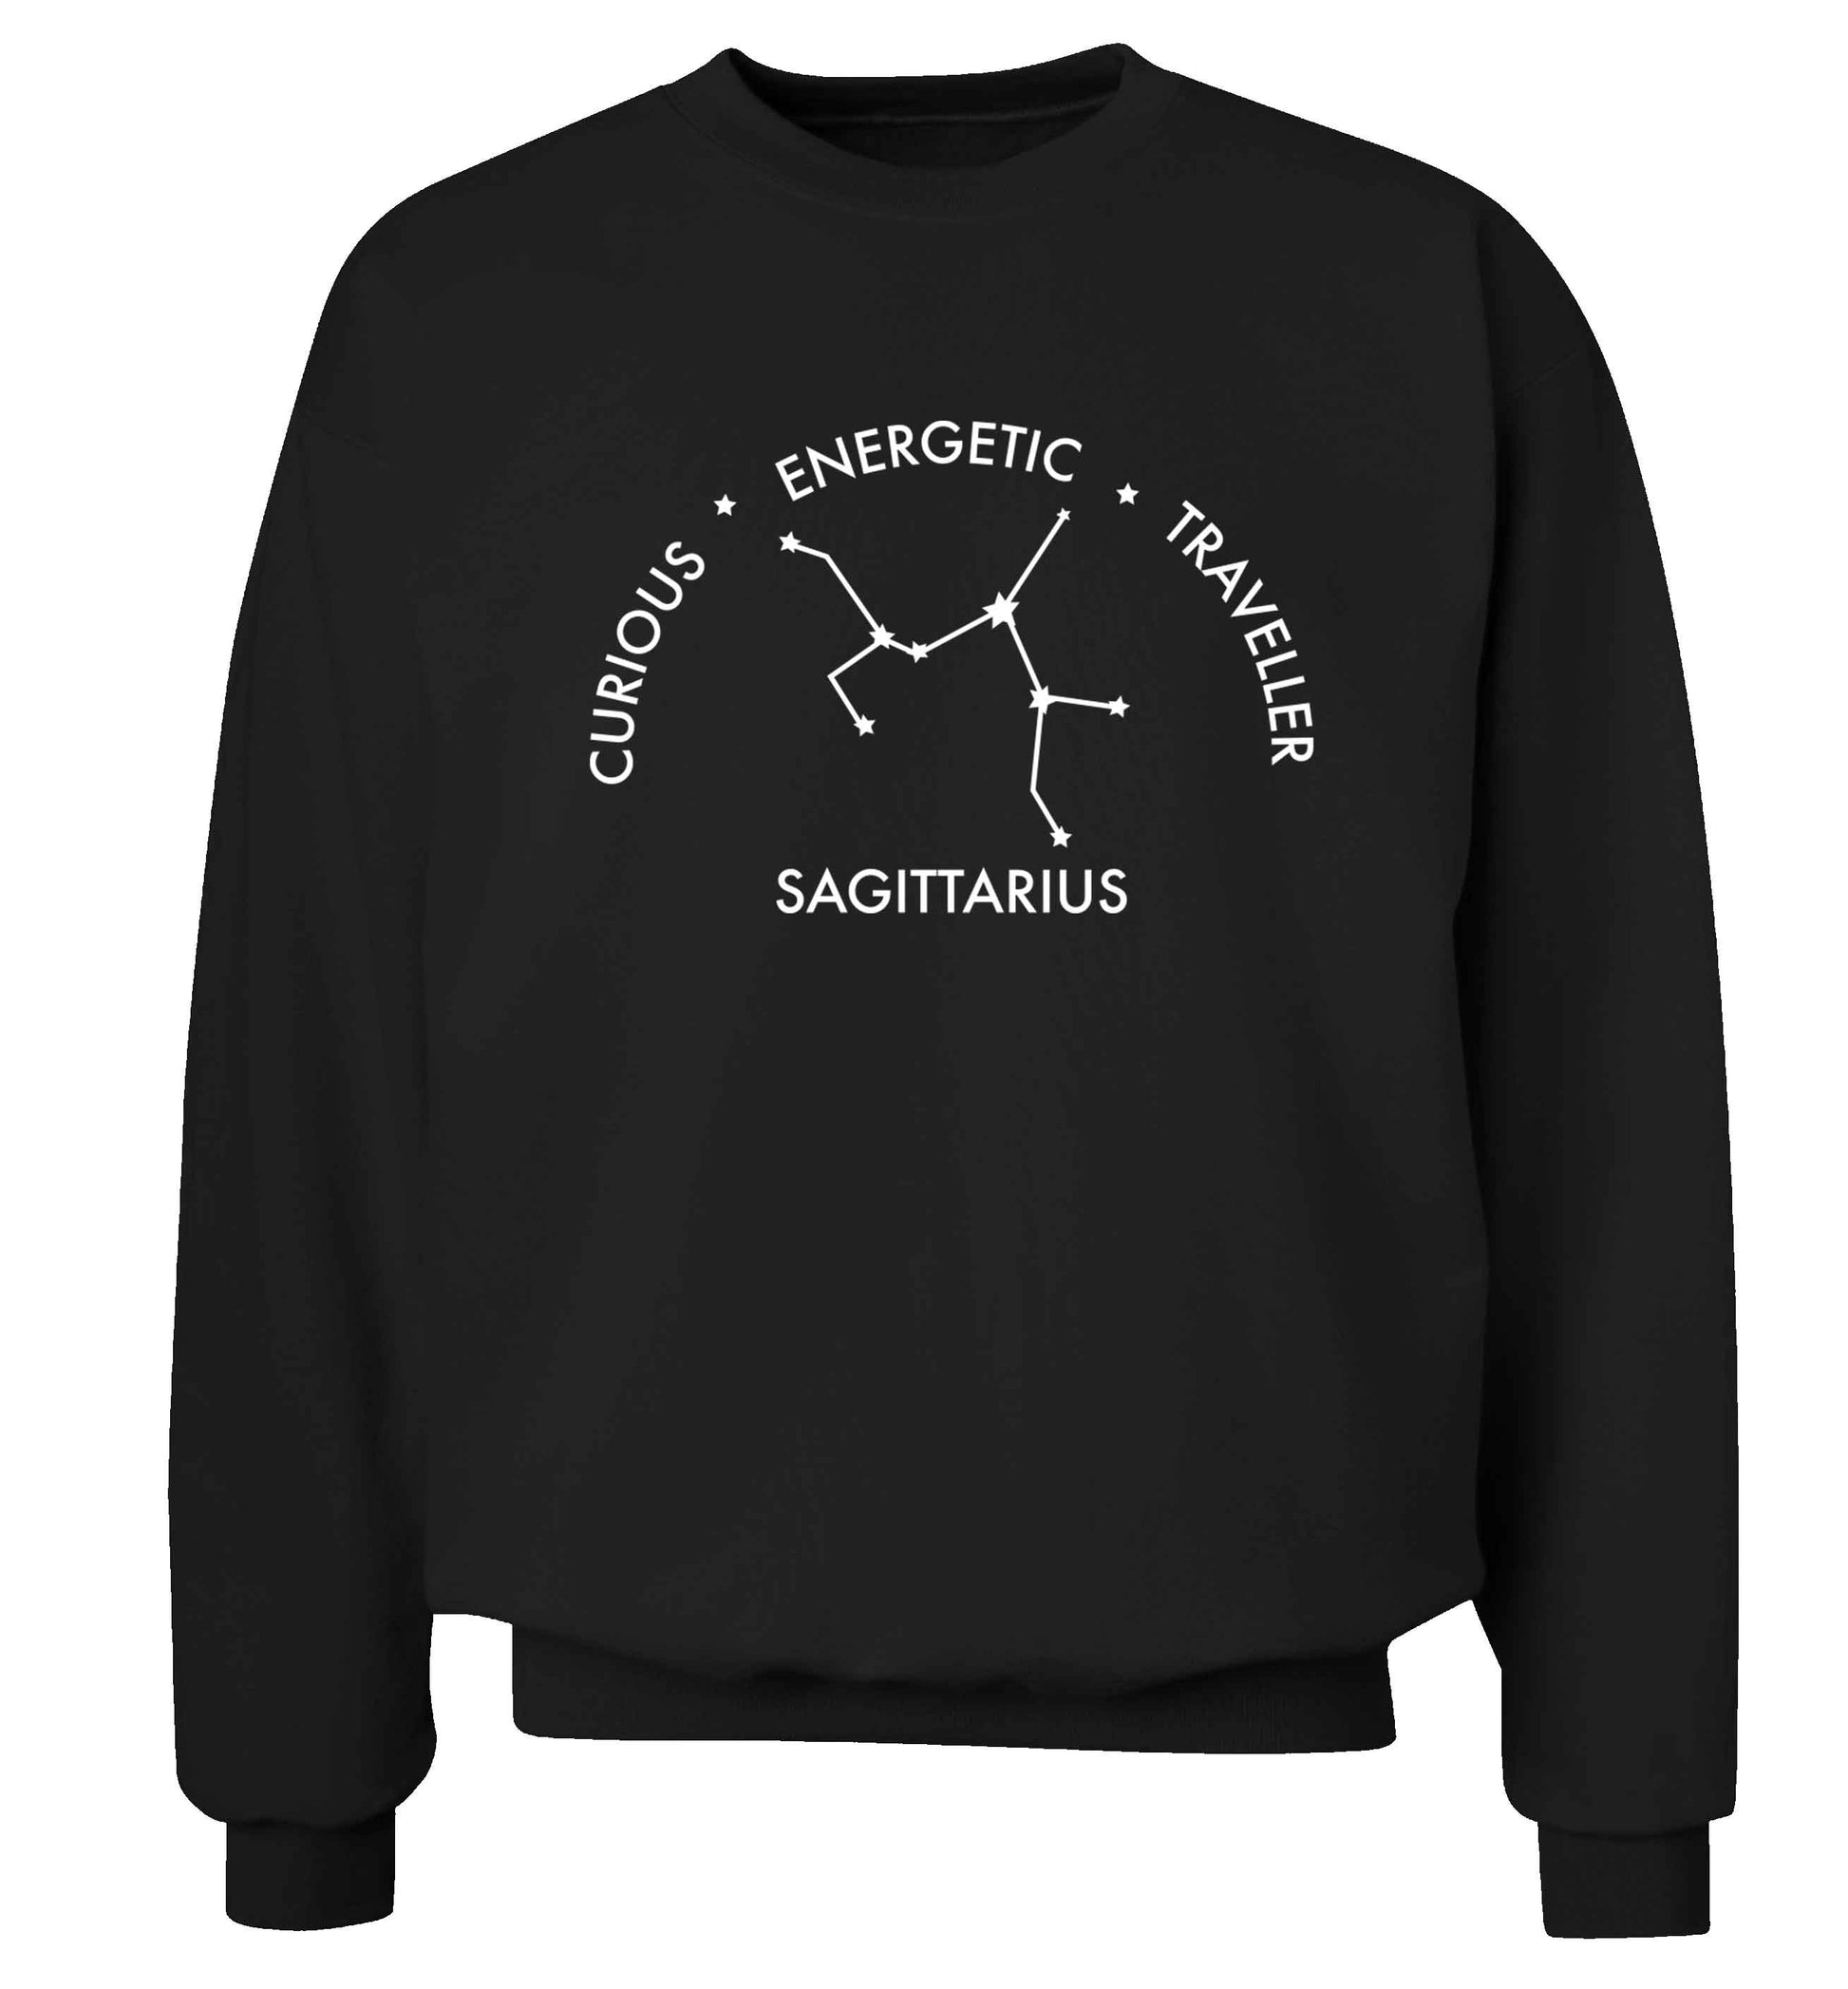 Sagittarius, curious, energetic, traveller Adult's unisex black Sweater 2XL